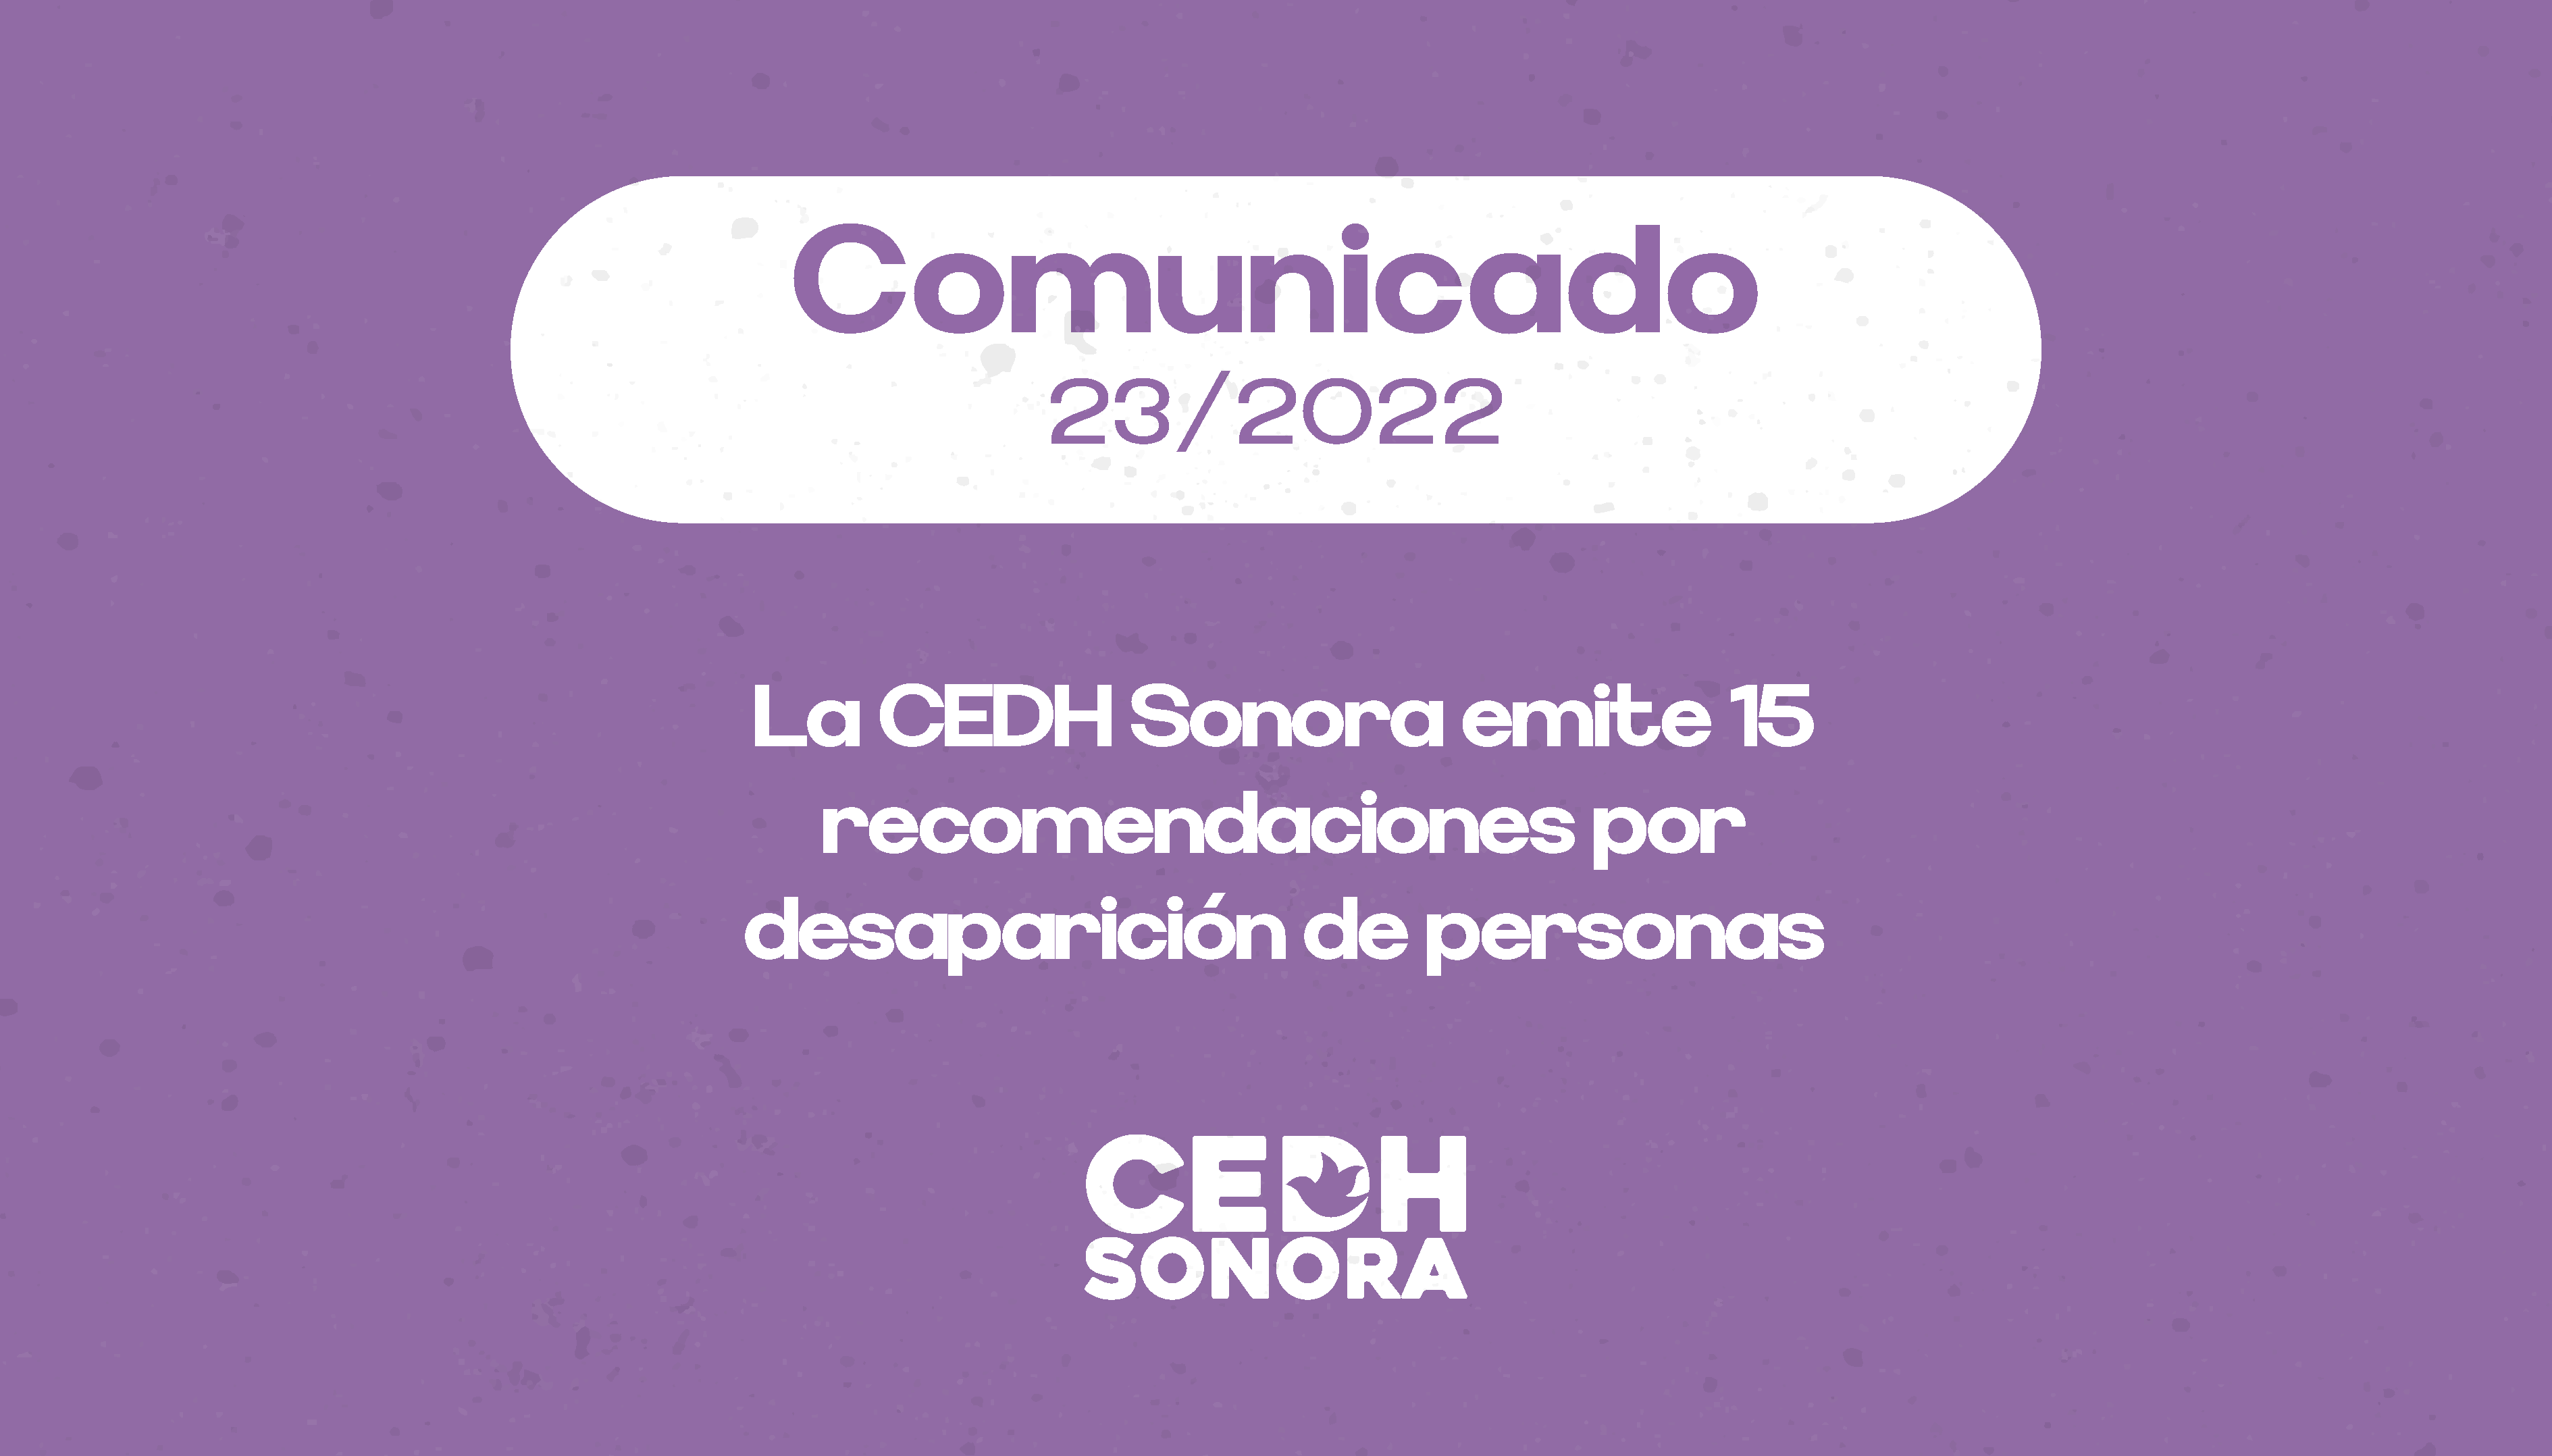 La CEDH Sonora emite 15 recomendaciones por desaparición de personas